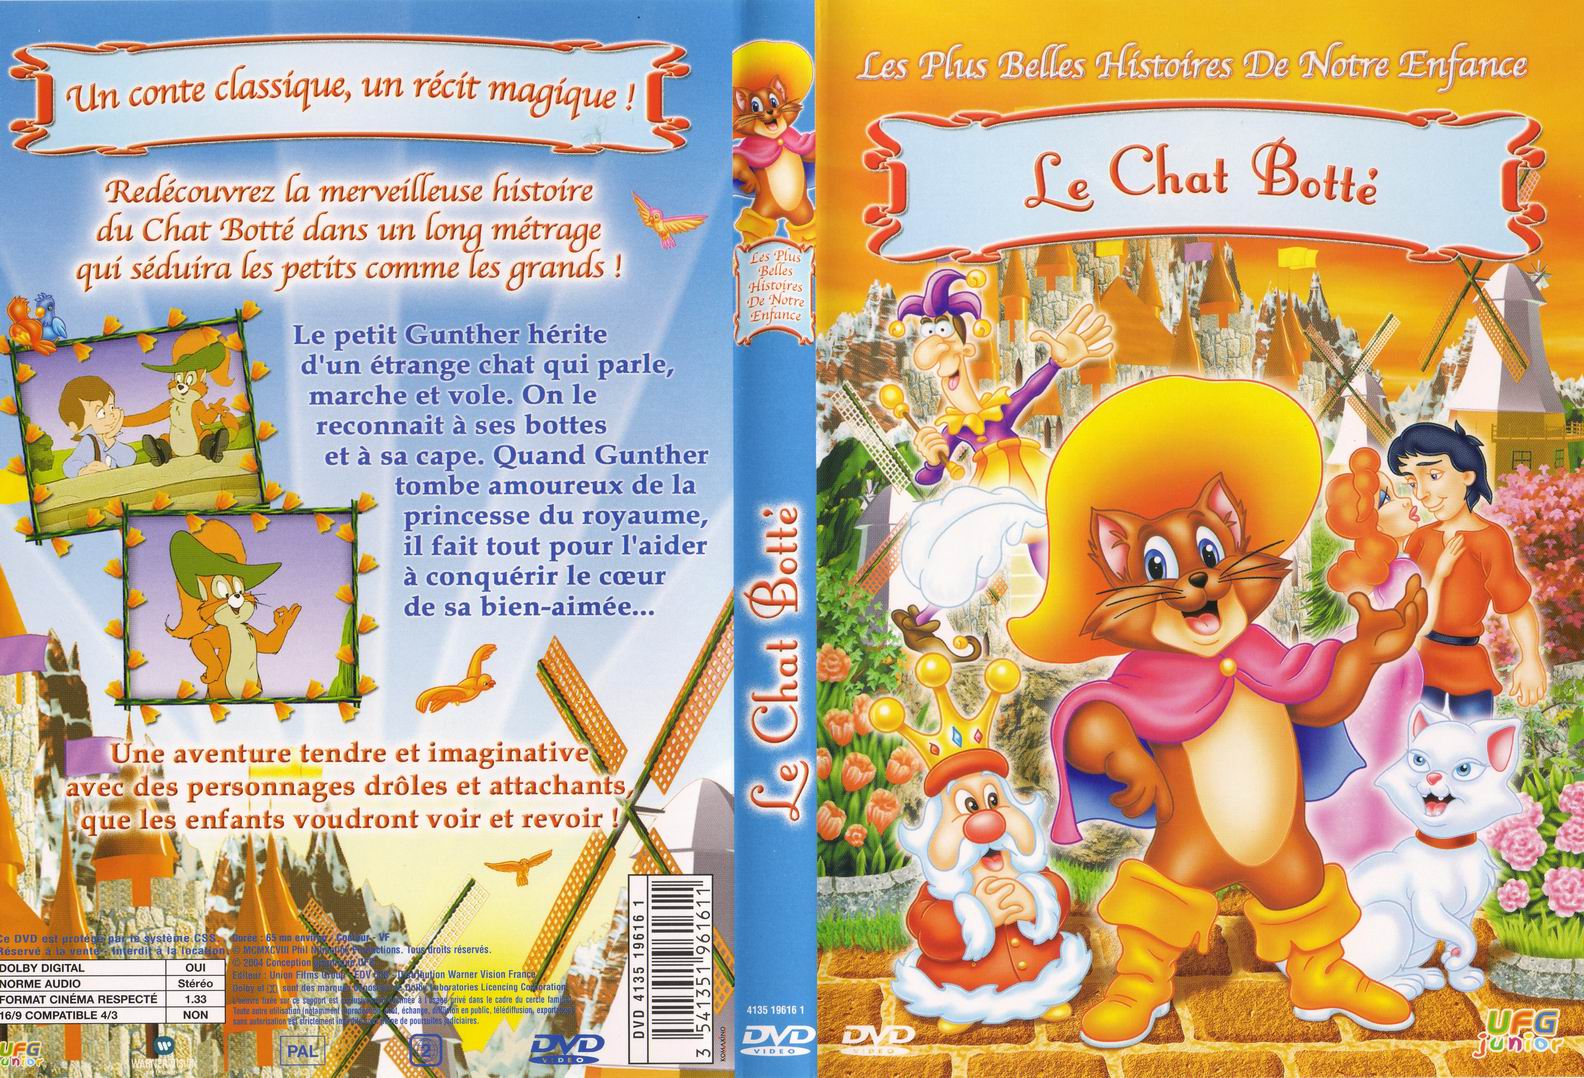 Jaquette DVD Les plus belles histoires de notre enfance - Le chat bott